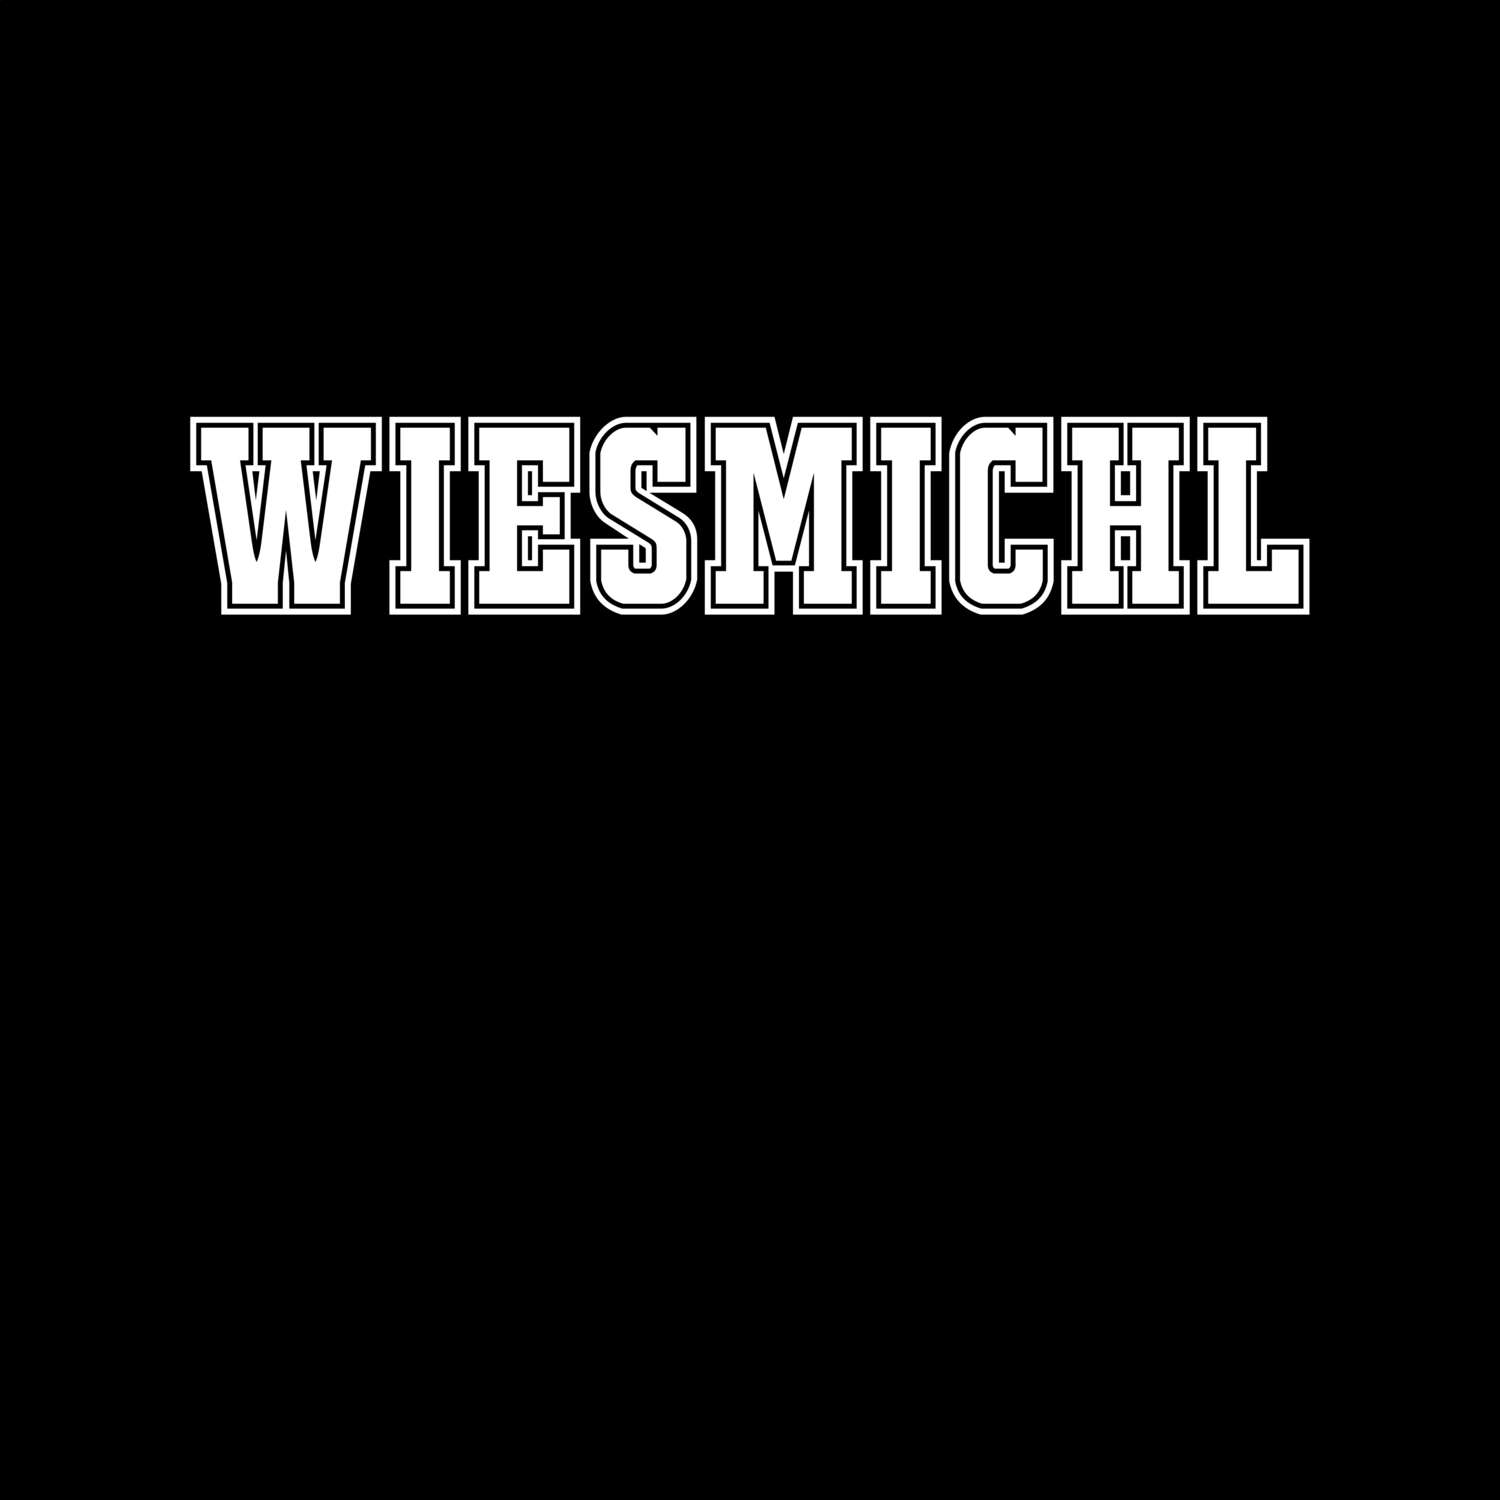 Wiesmichl T-Shirt »Classic«